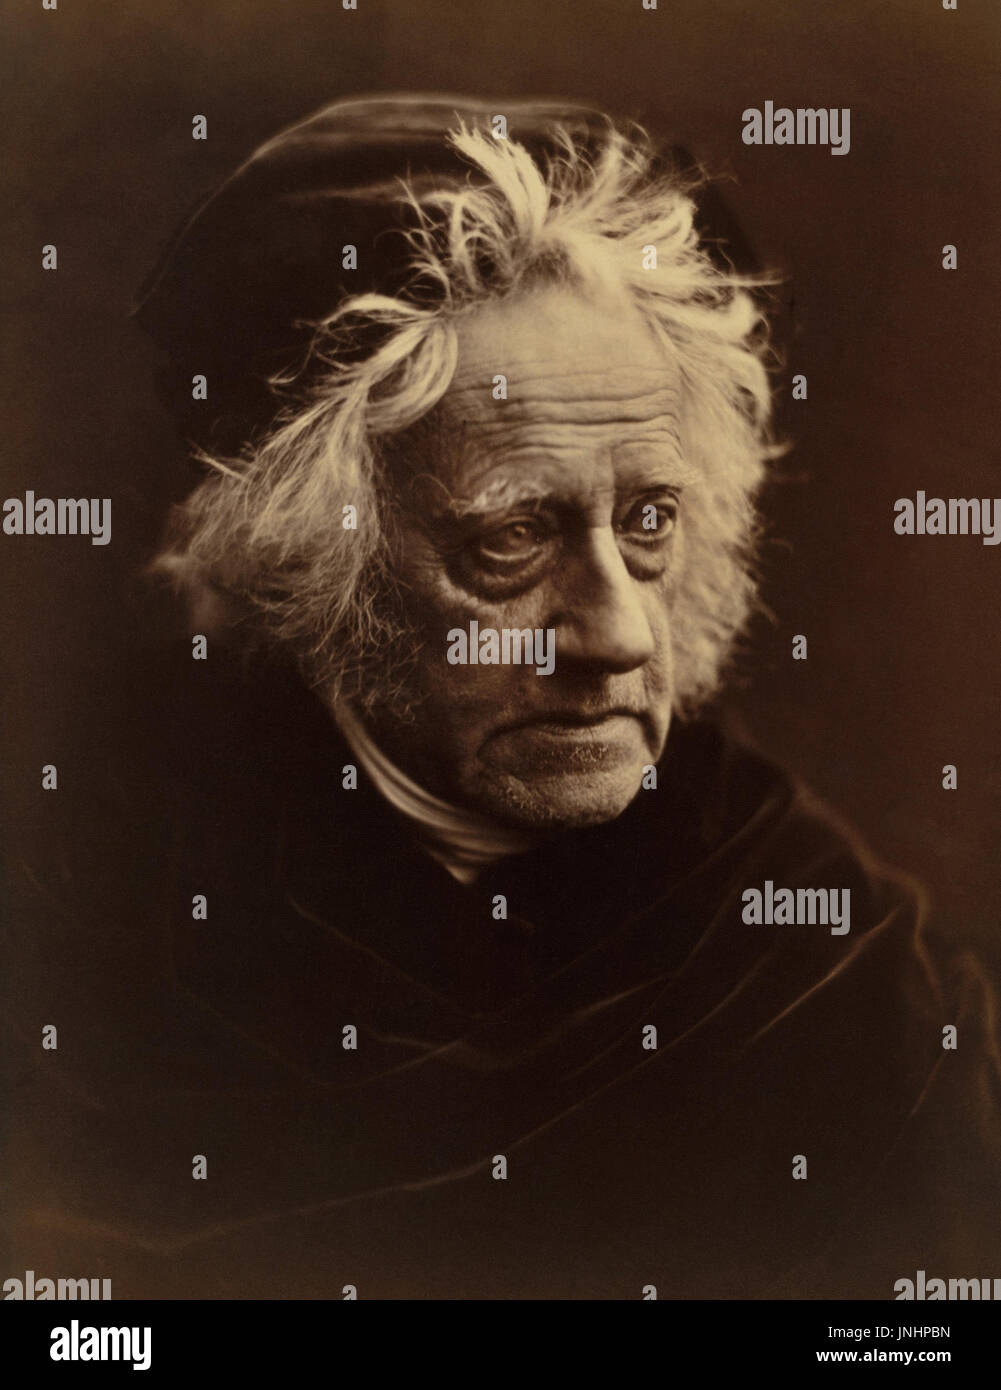 Sir John Herschel (1792-1871) war ein englischer Universalgelehrter, Astronom, Mathematiker, Chemiker, Erfinder und Schlüsselfigur in der Entwicklung der Fotografie. Er erfand Cyanotypie Fotografie und verschiedene Prozesse, die die anderen frühen Fotografie unterstützt Pioniere einschließlich Daguerre. Herschel ist auch gutgeschrieben, mit der Prägung des Begriffs Fotografie im Jahre 1839. (Foto: Julia Margaret Cameron im April 1867) Stockfoto